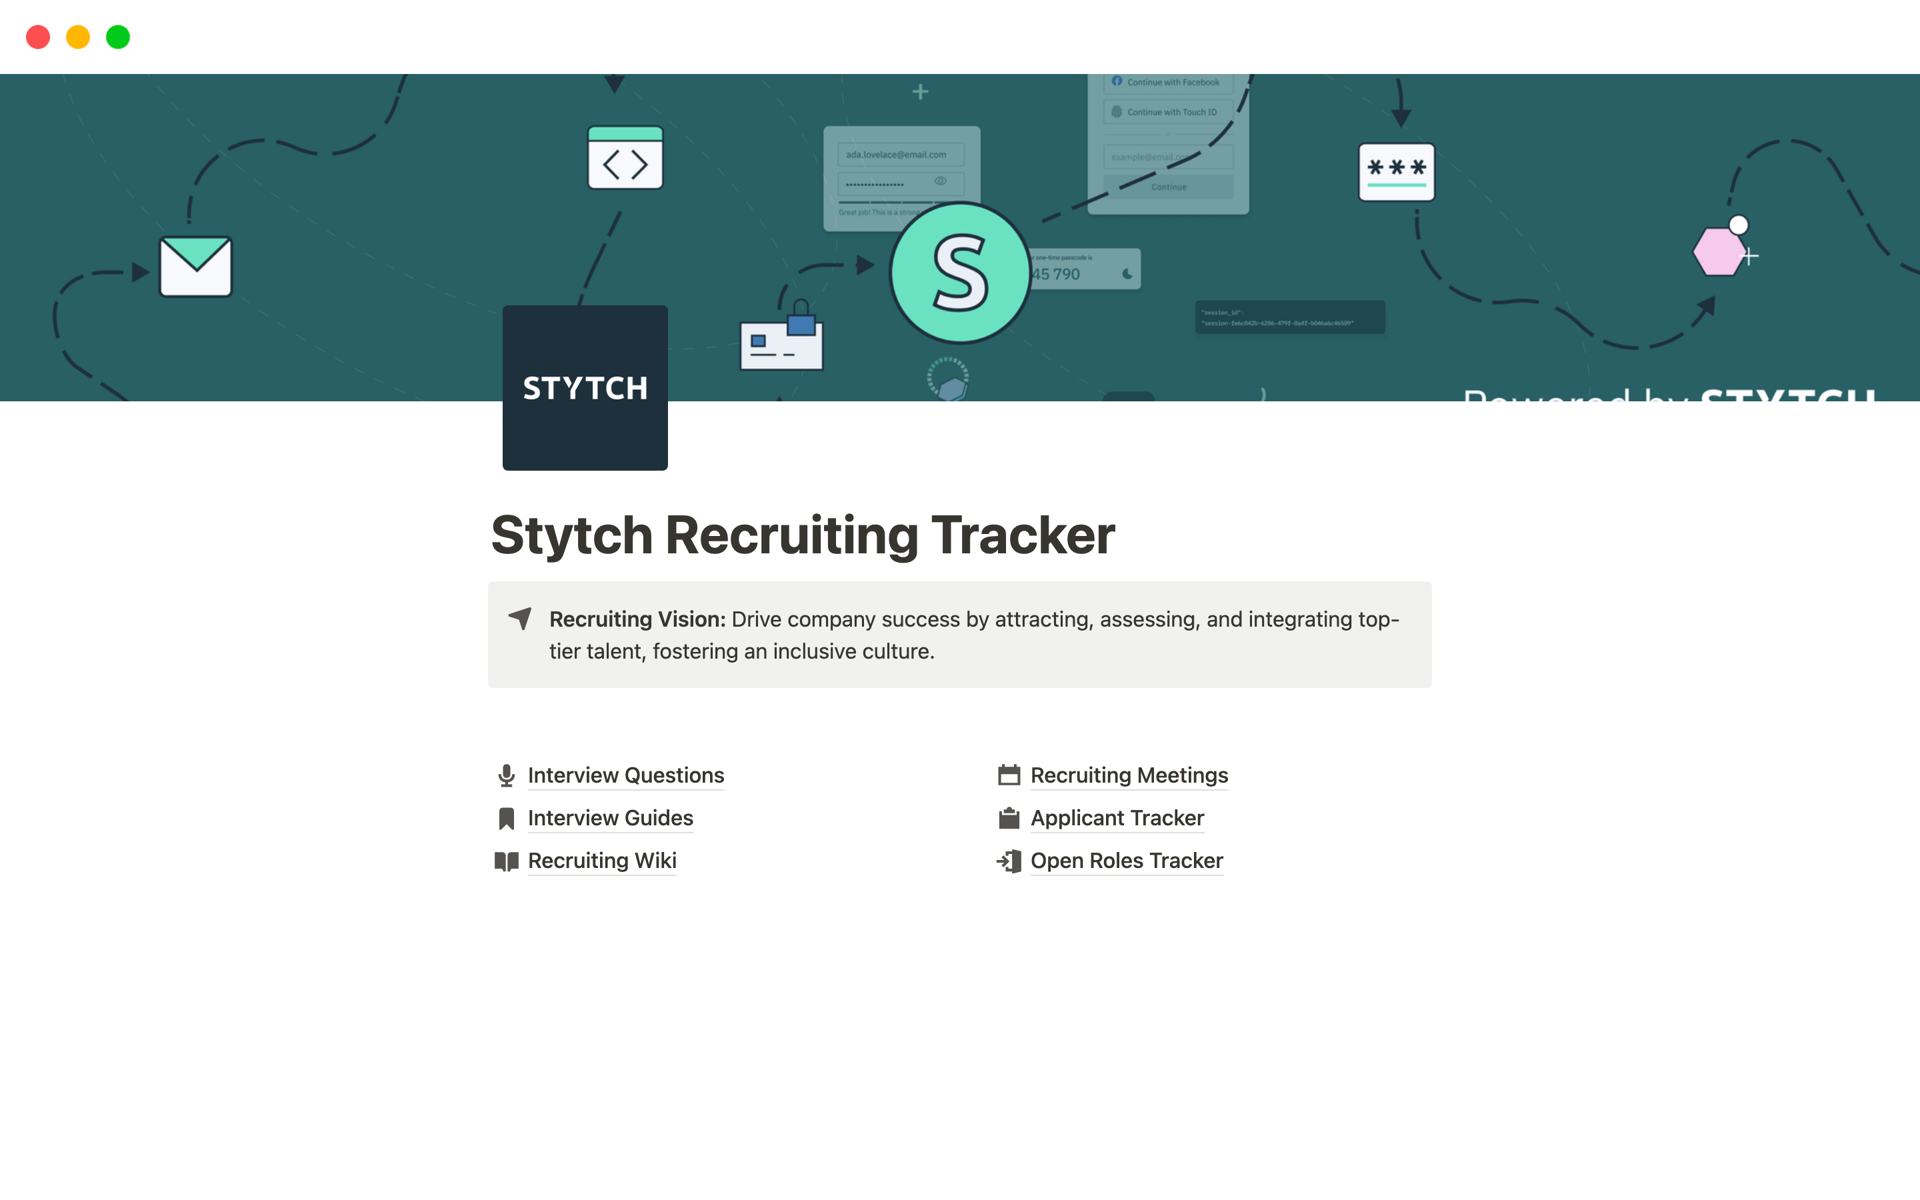 Vista previa de plantilla para Stytch’s Recruiting Tracker